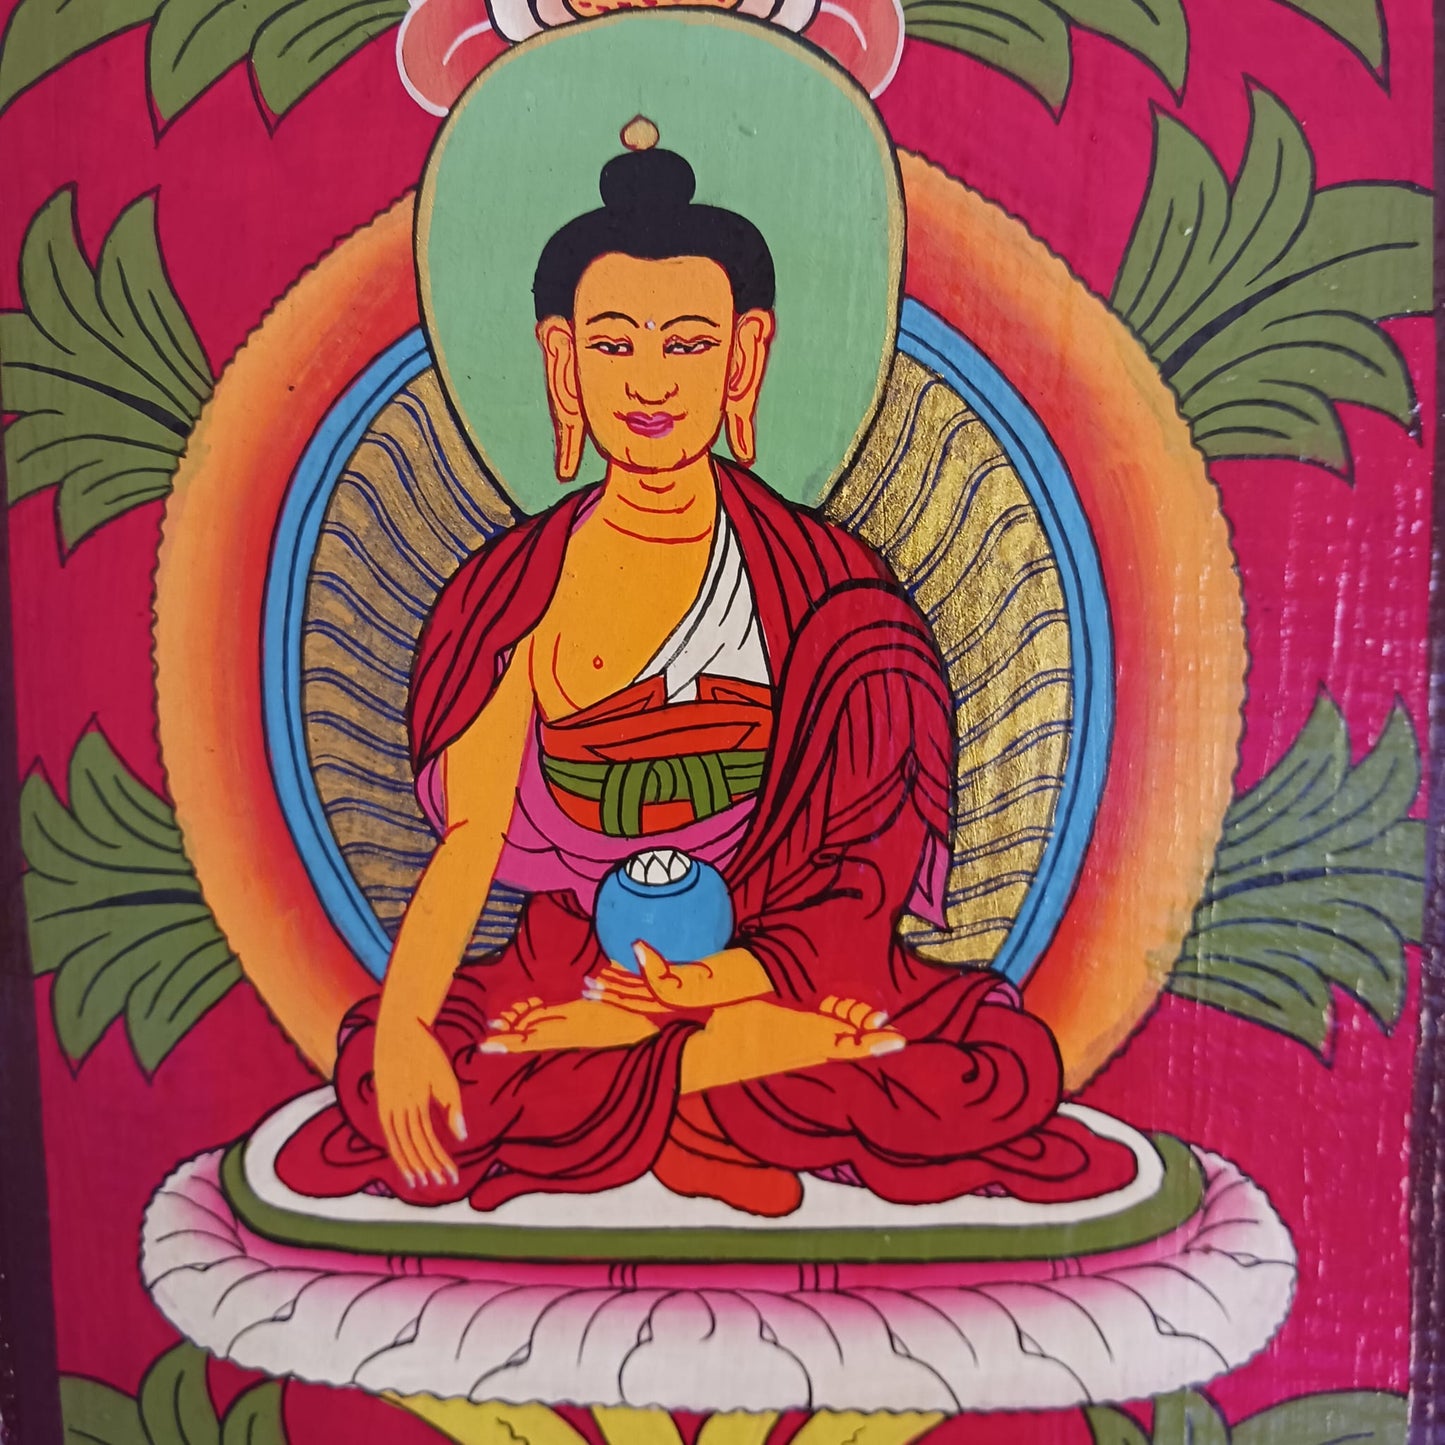 5 Buddhas hand painted thangka panel